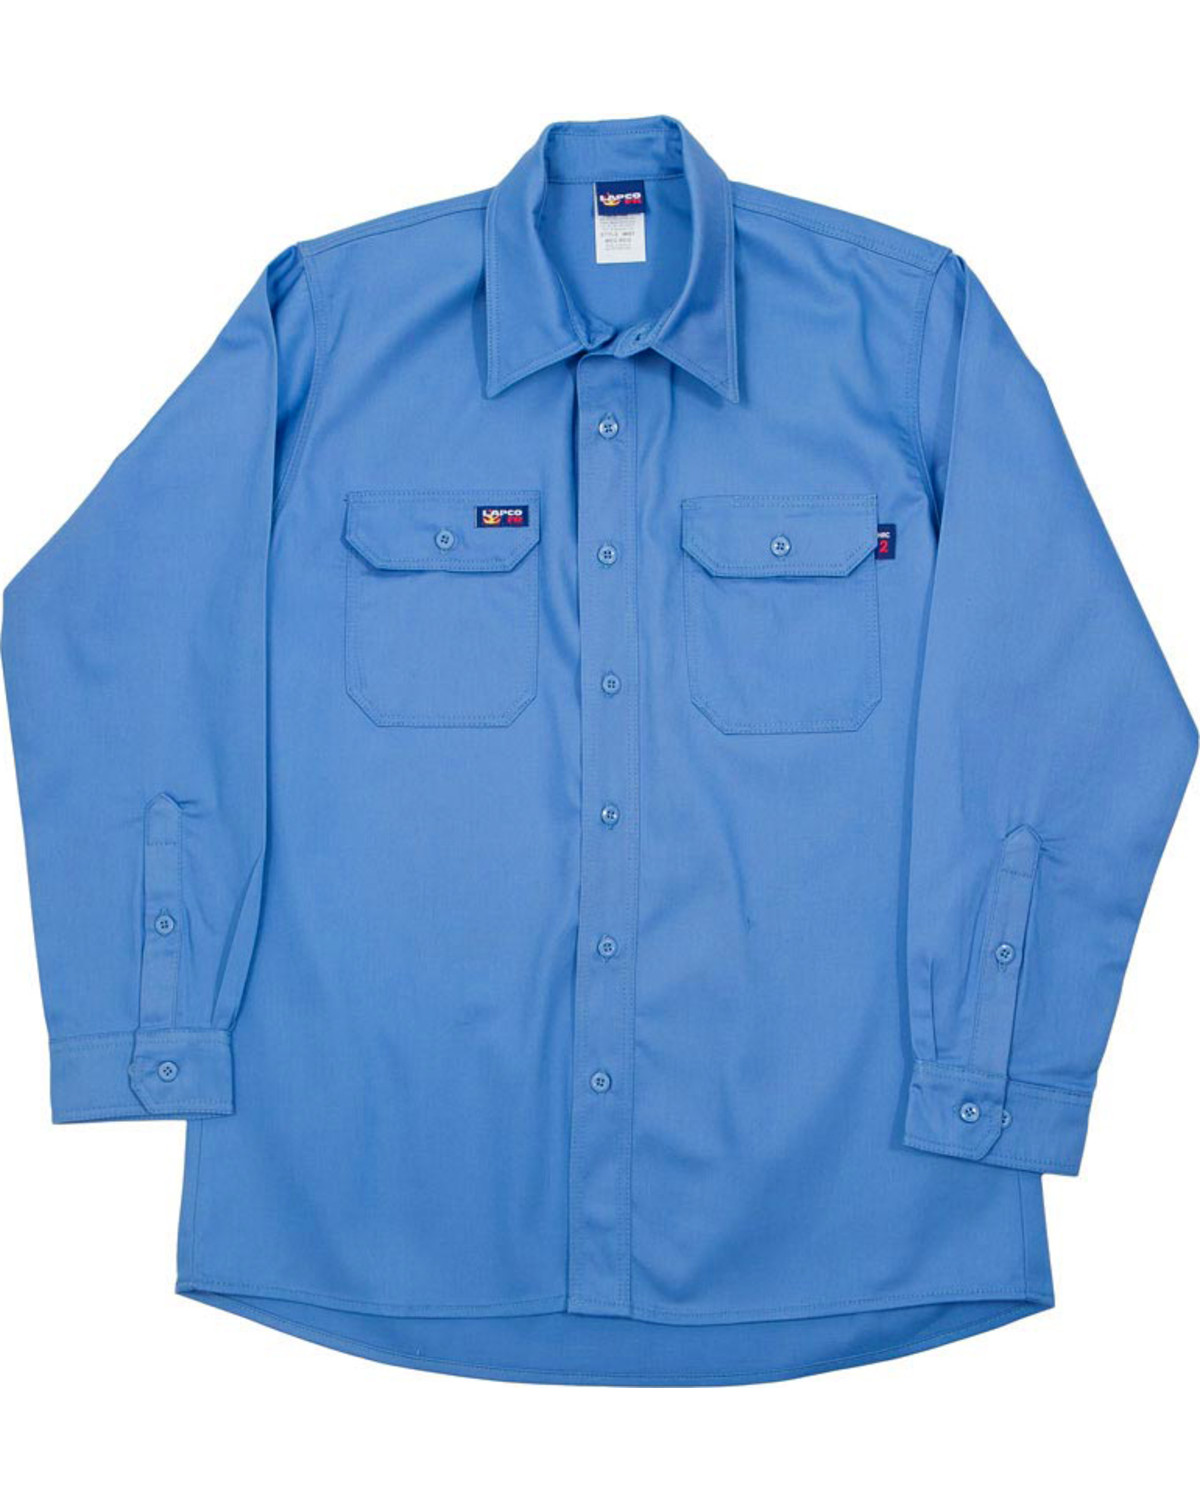 Lapco Men's Blue FR Uniform Shirt